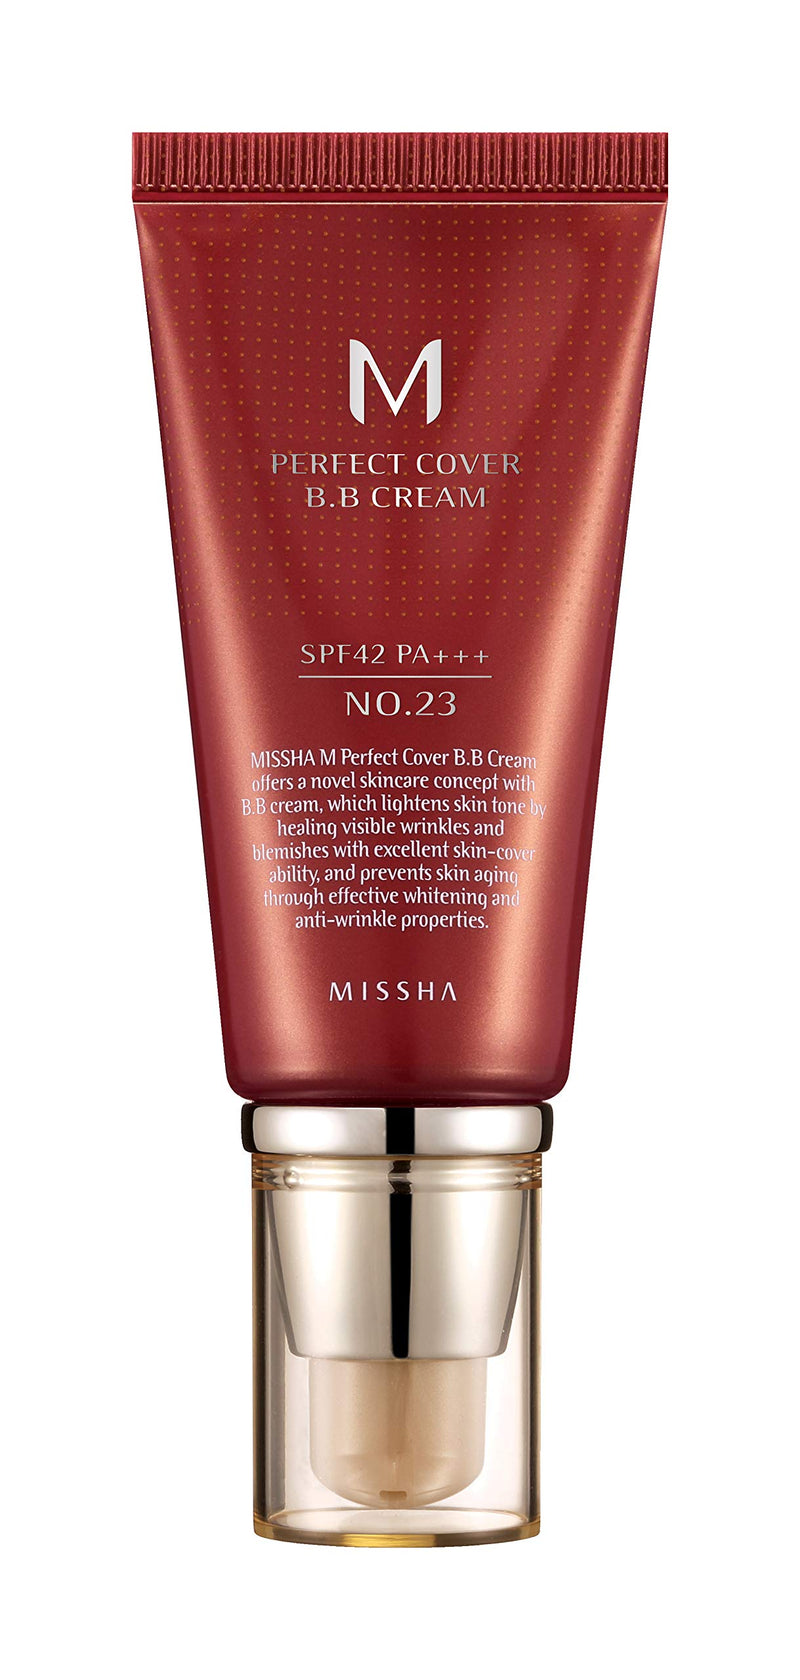 [Australia] - Missha M Perfect Cover Bb Cream, SPF42, No. 23 / Natural Beige, 20 ml, 8809581487963 